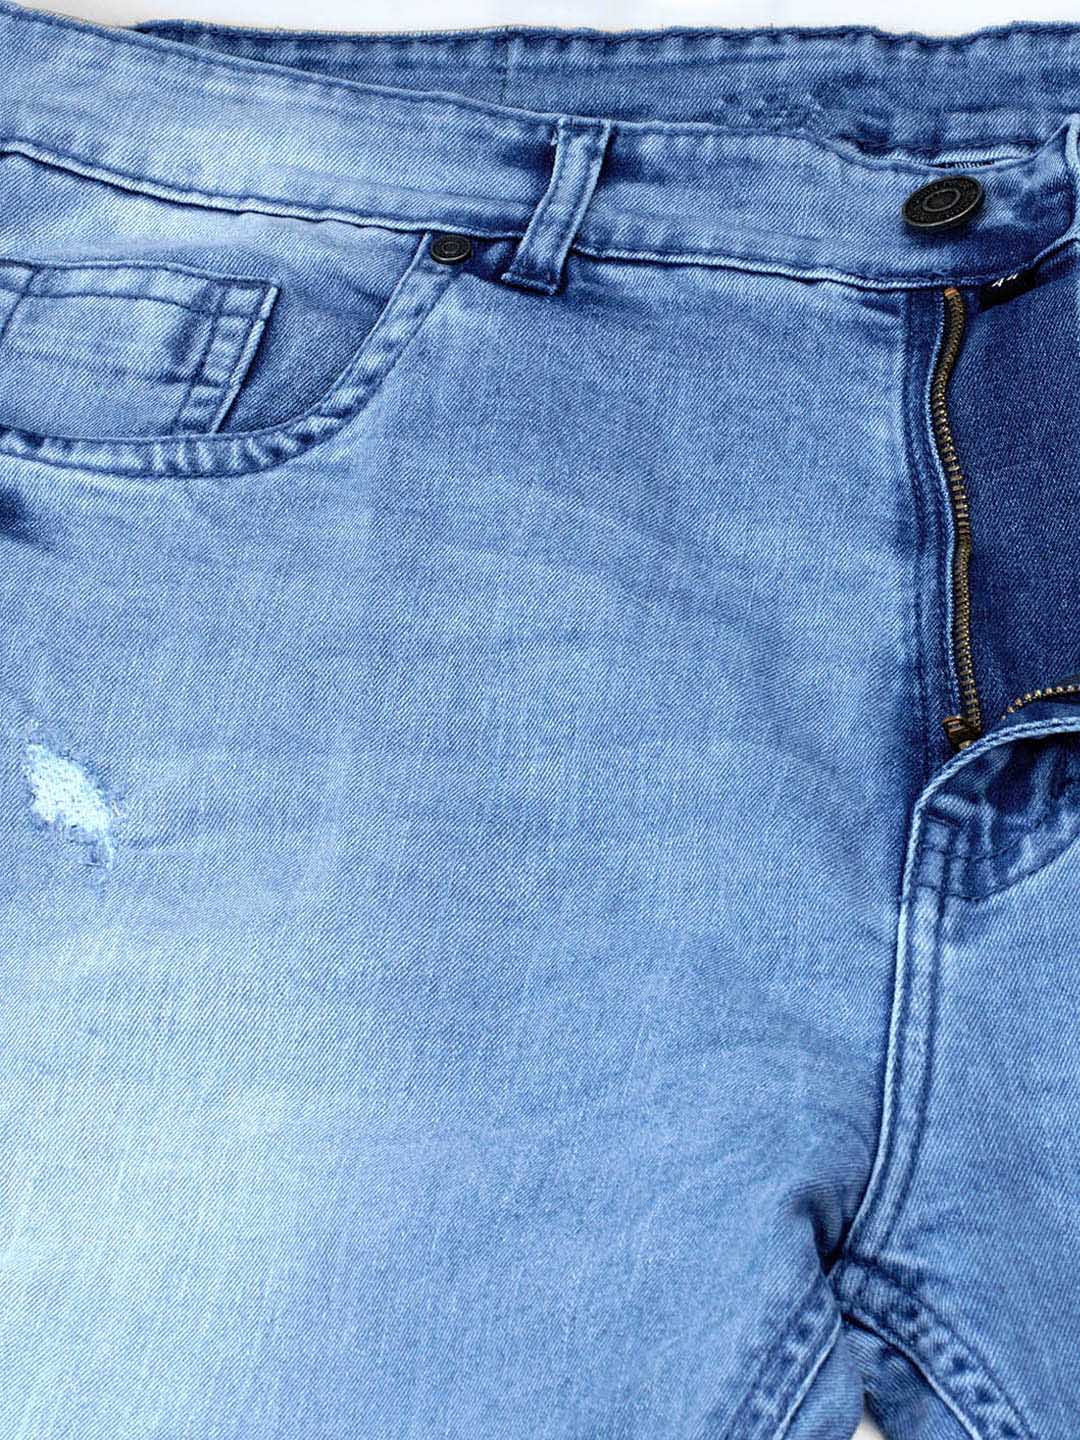 bottomwear/jeans/JPJ12114/jpj12114-2.jpg